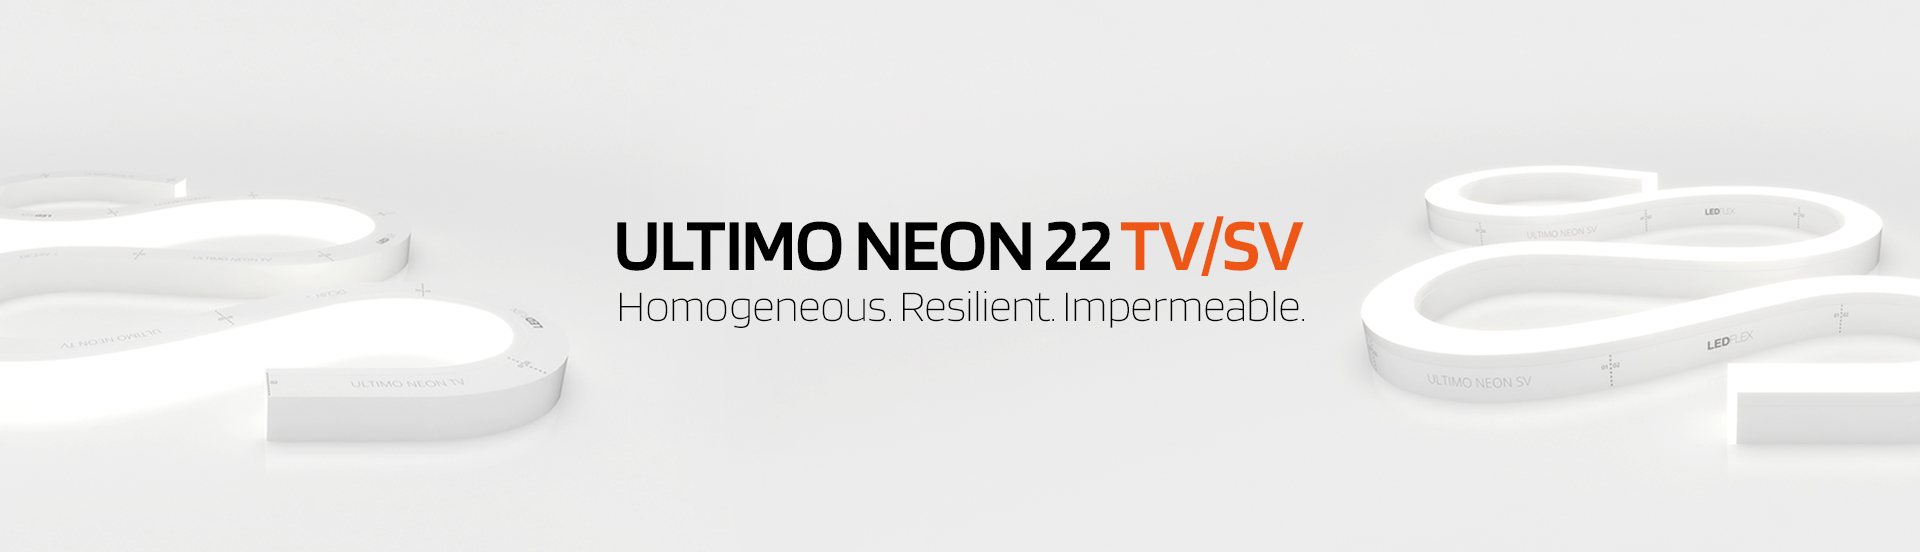 Ultimo Neon 22 TV/SV